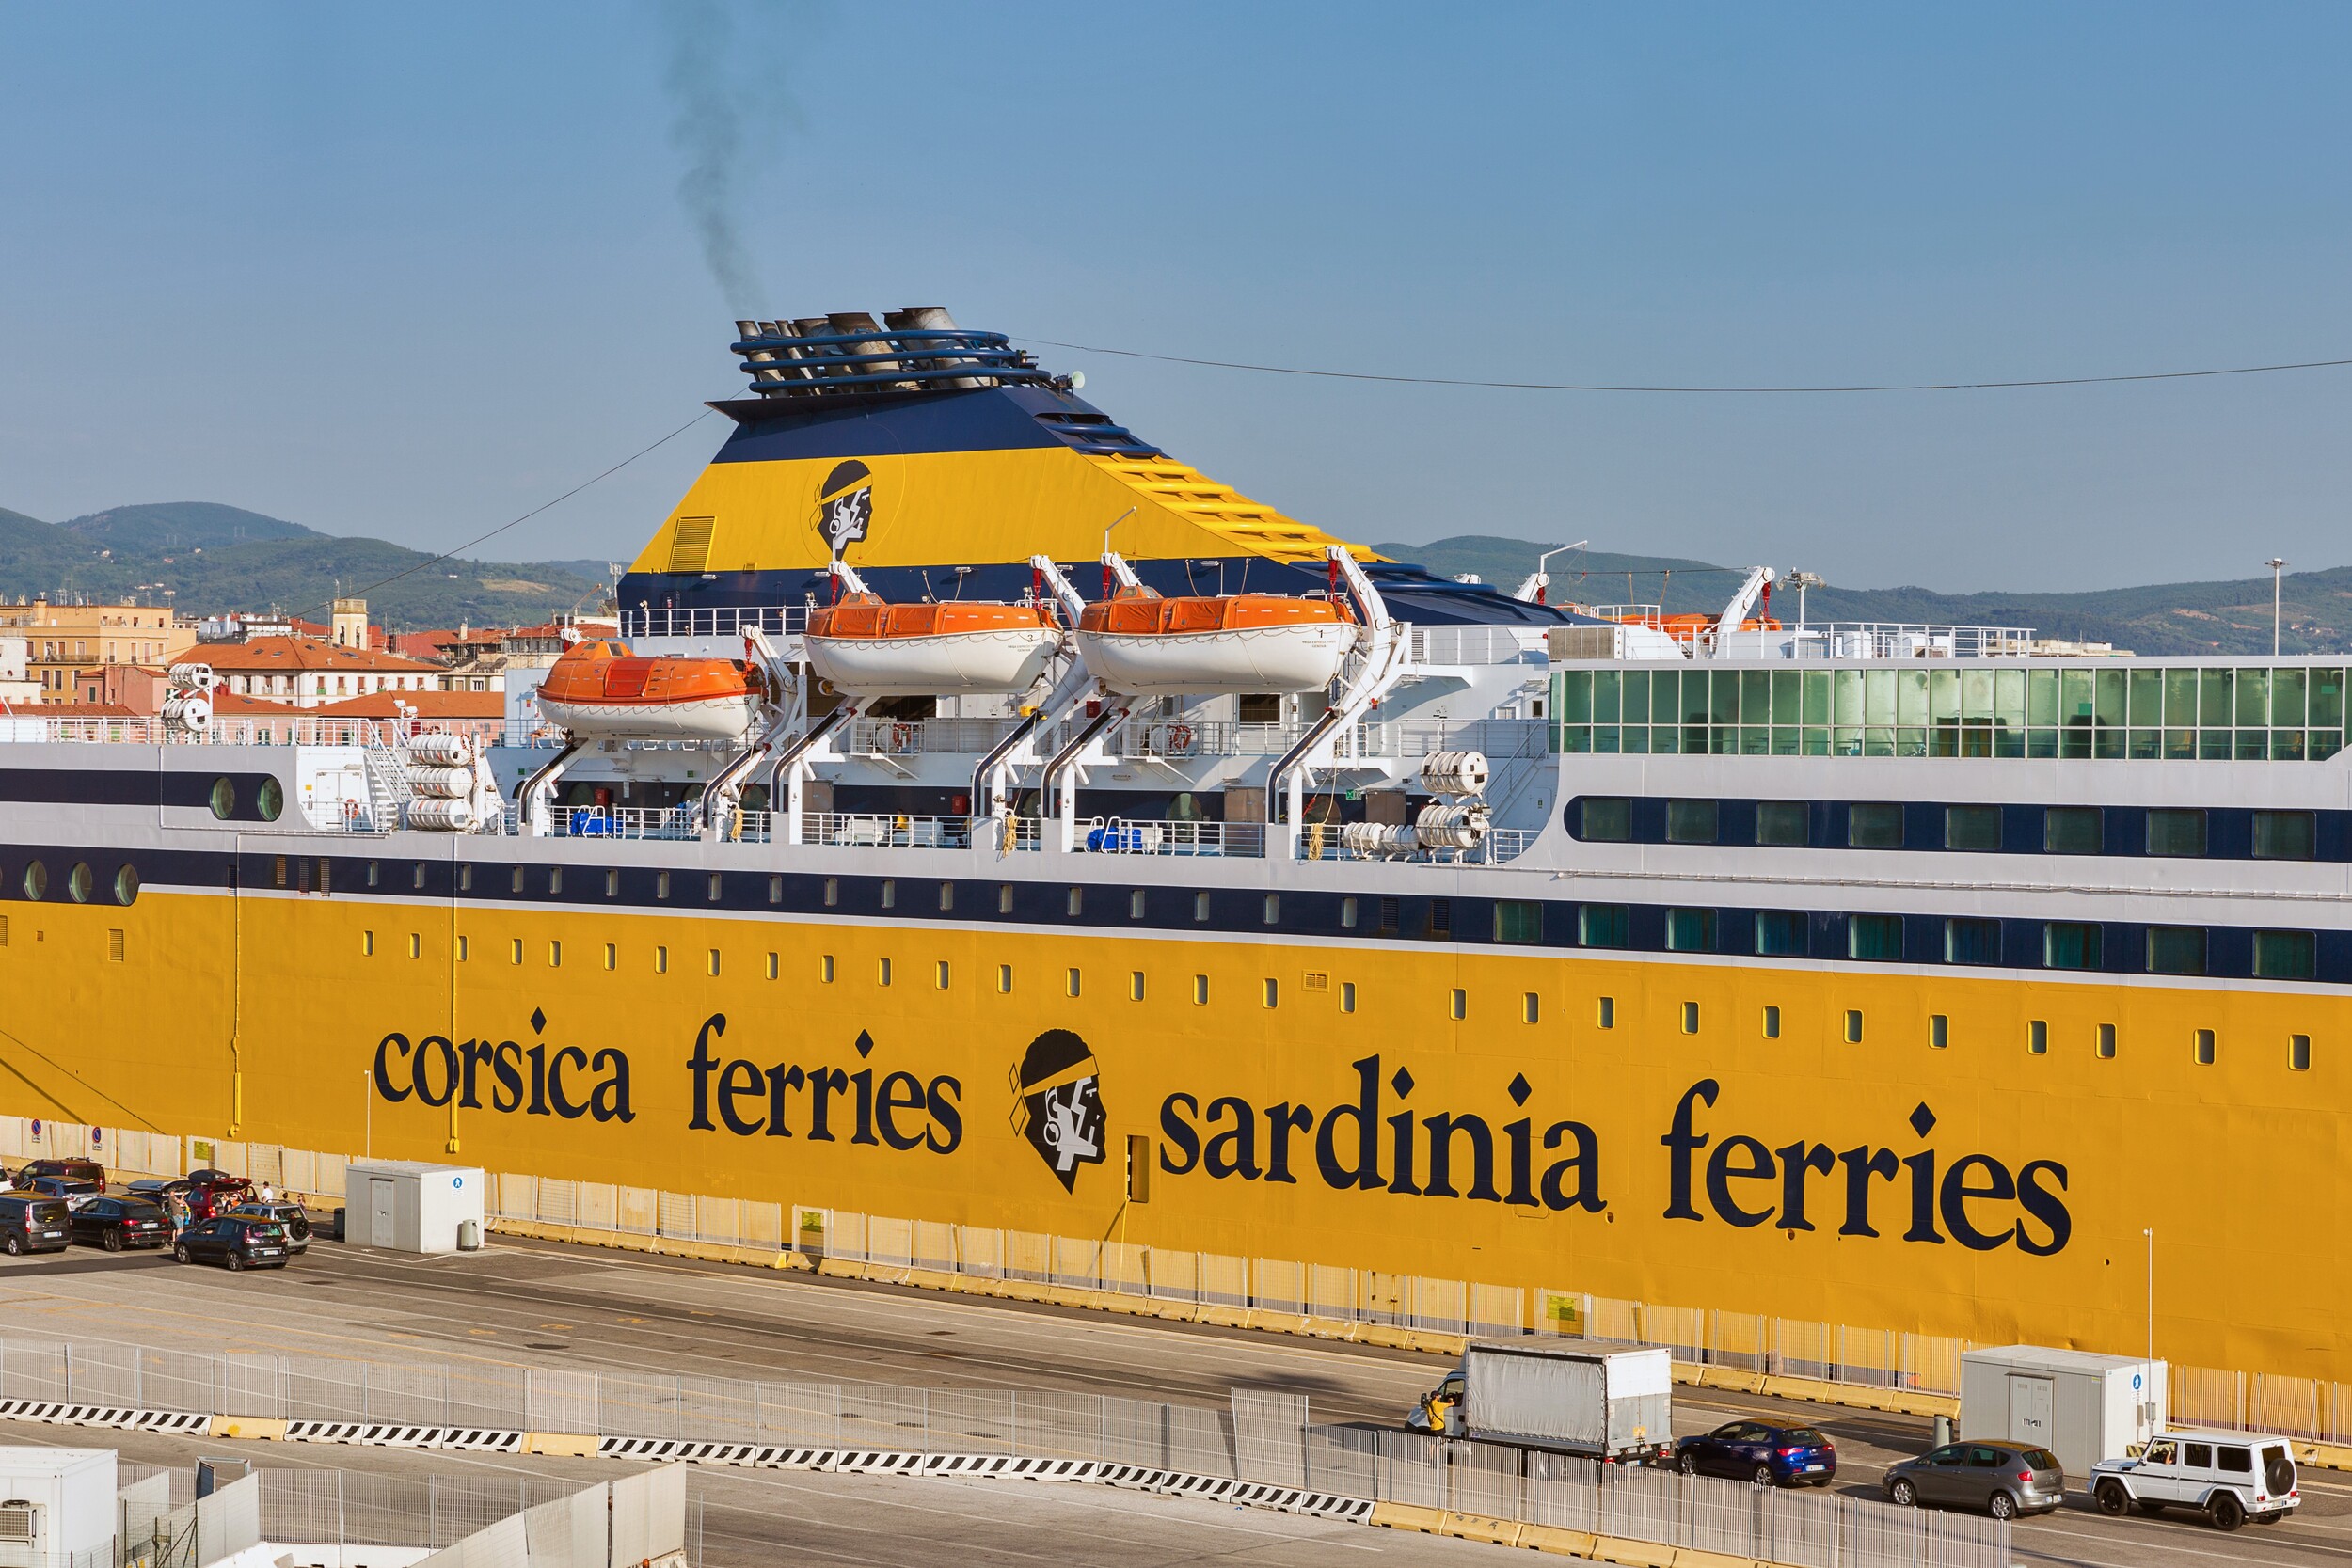 Corsica Ferries confirme s'être fait voler des données de clients : la compagnie a néanmoins bien réagi à l'attaque informatique